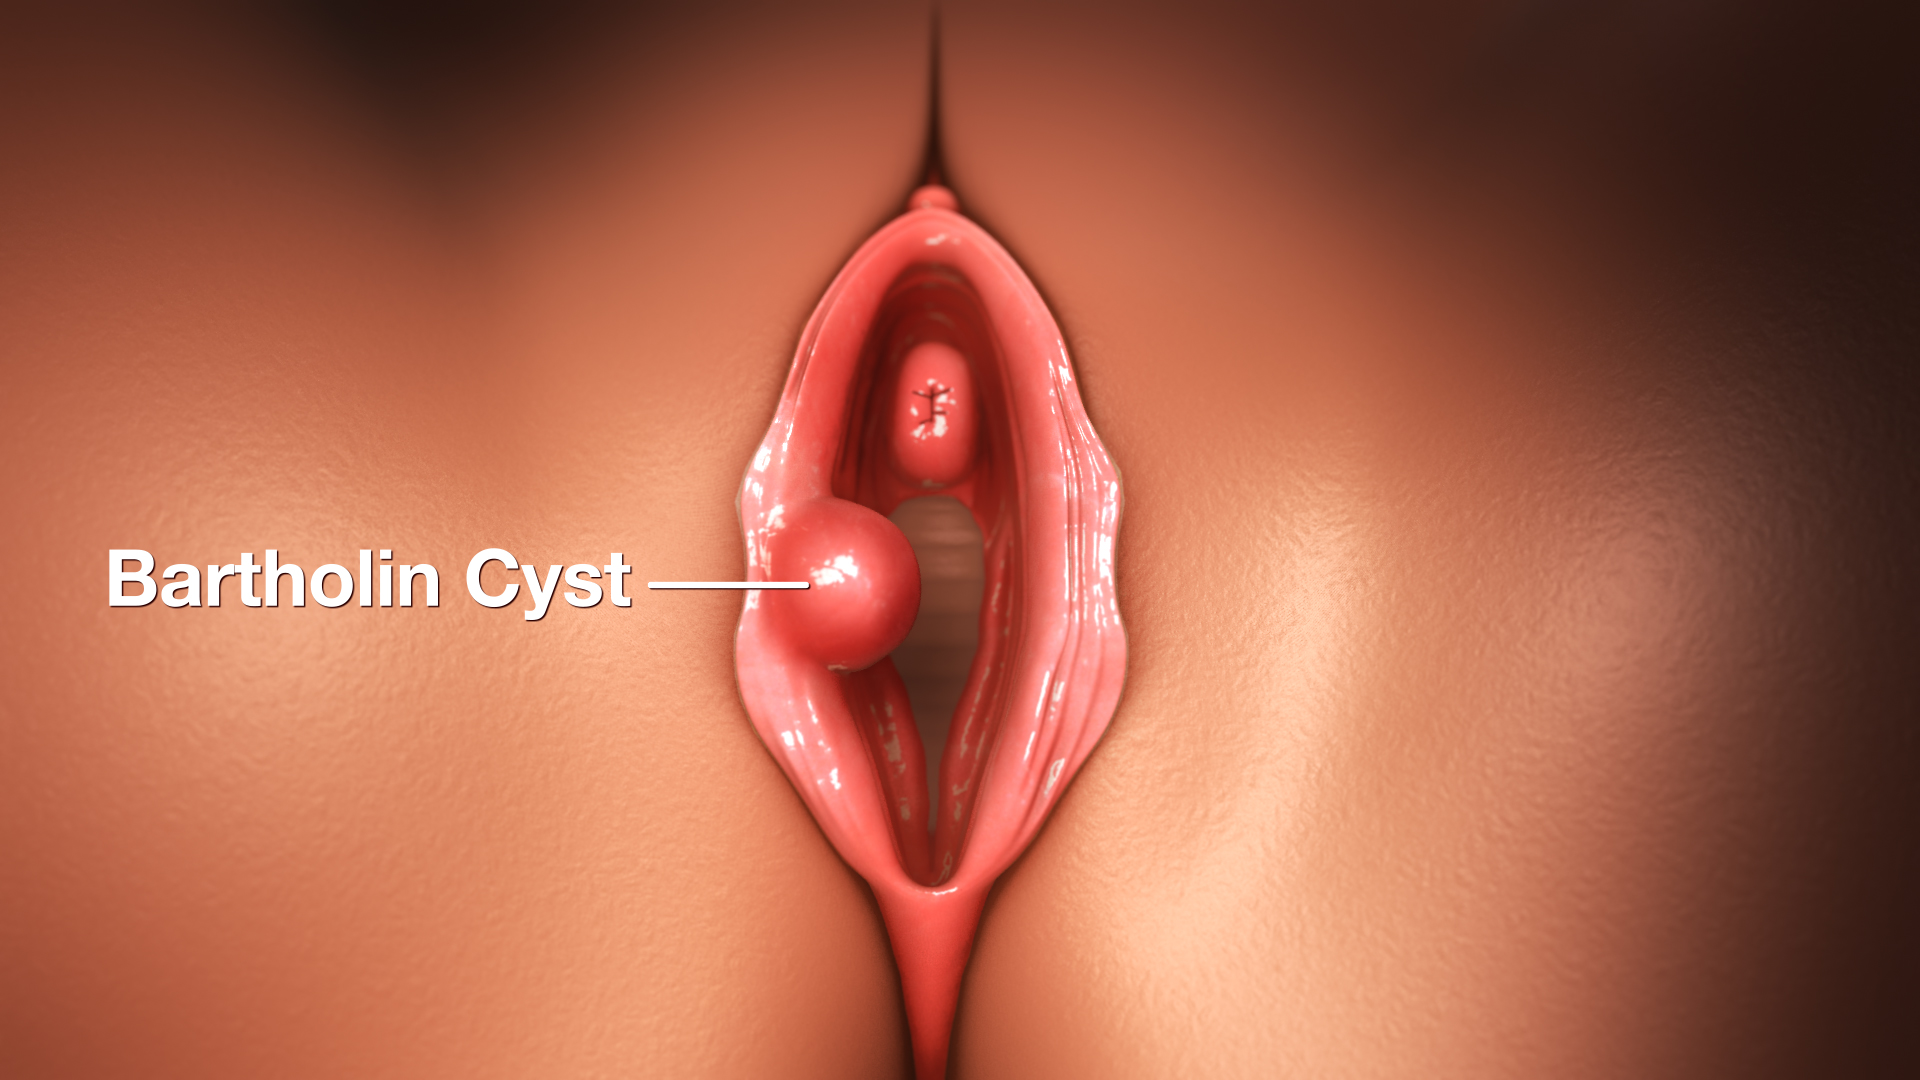 Cara Kecutkan Bartholin Cyst Tanpa Bedah